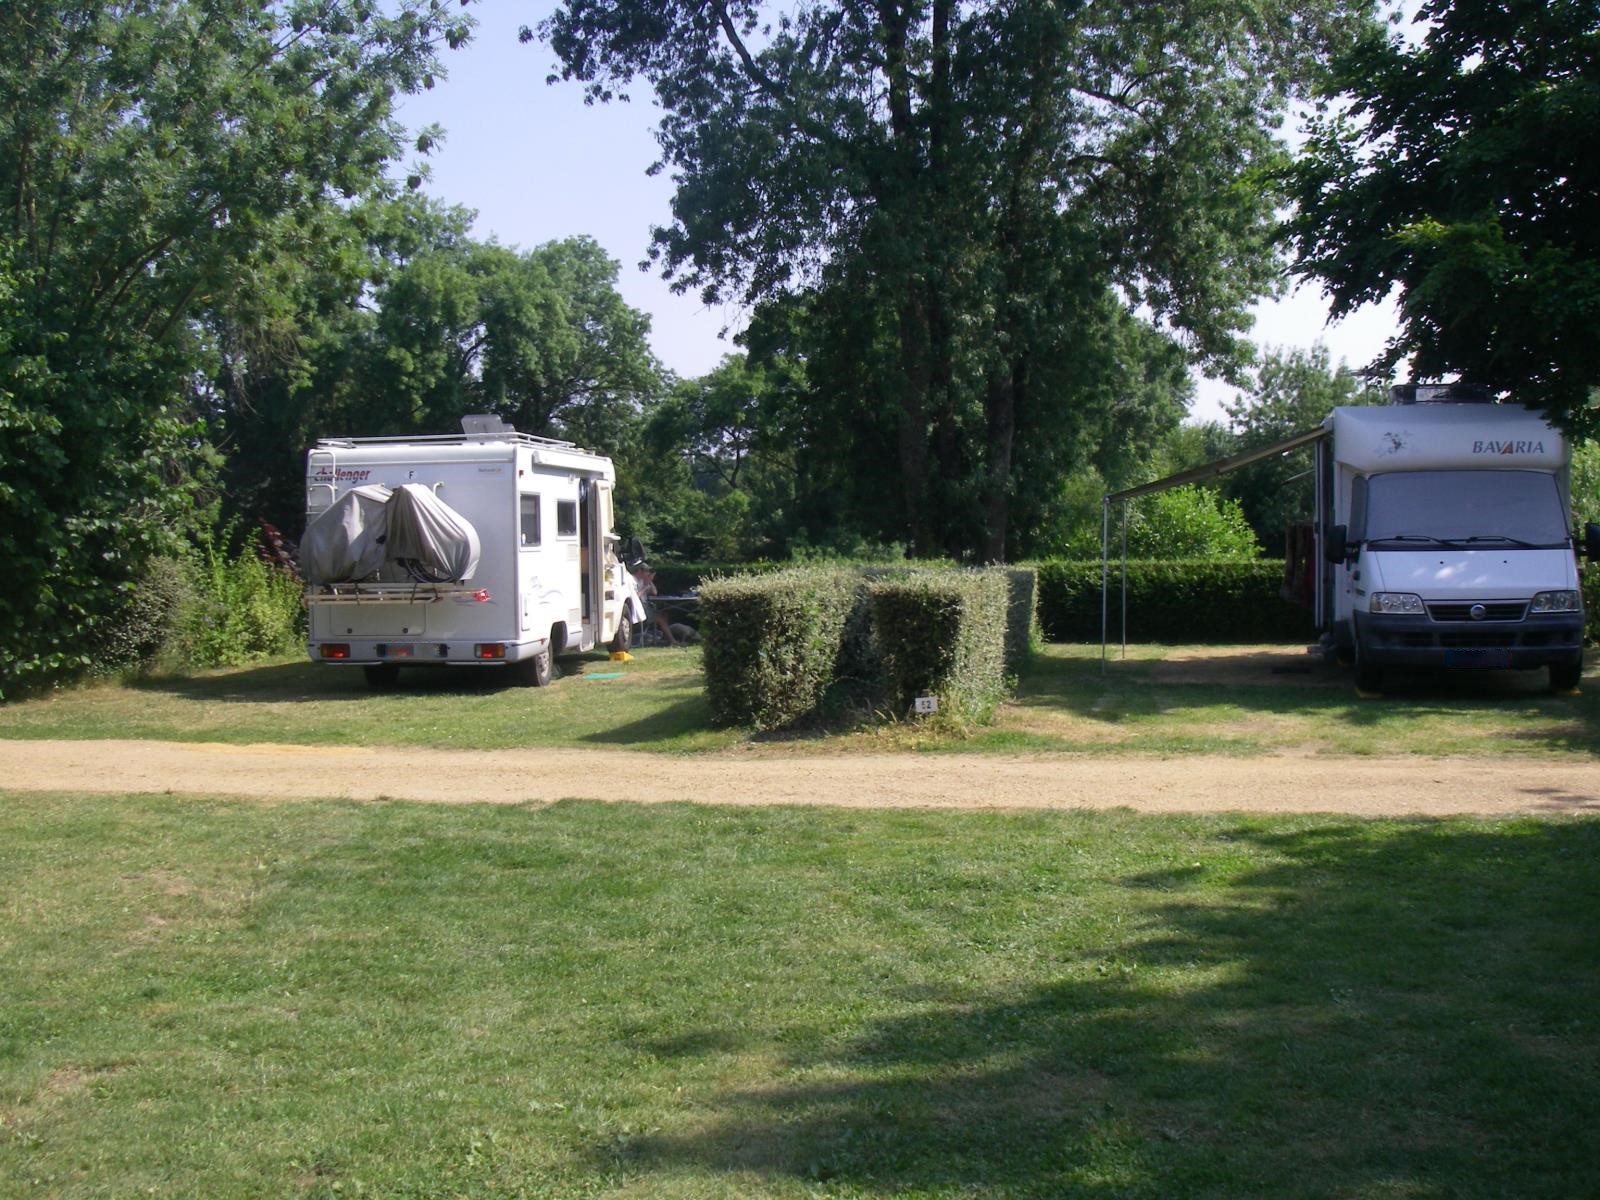 Emplacement - Forfait Emplacement 1 Personne (Camping Car / Caravane + 1 Véhicule / Tente + 1 Véhicule) - Camping Les Portes de l'Anjou